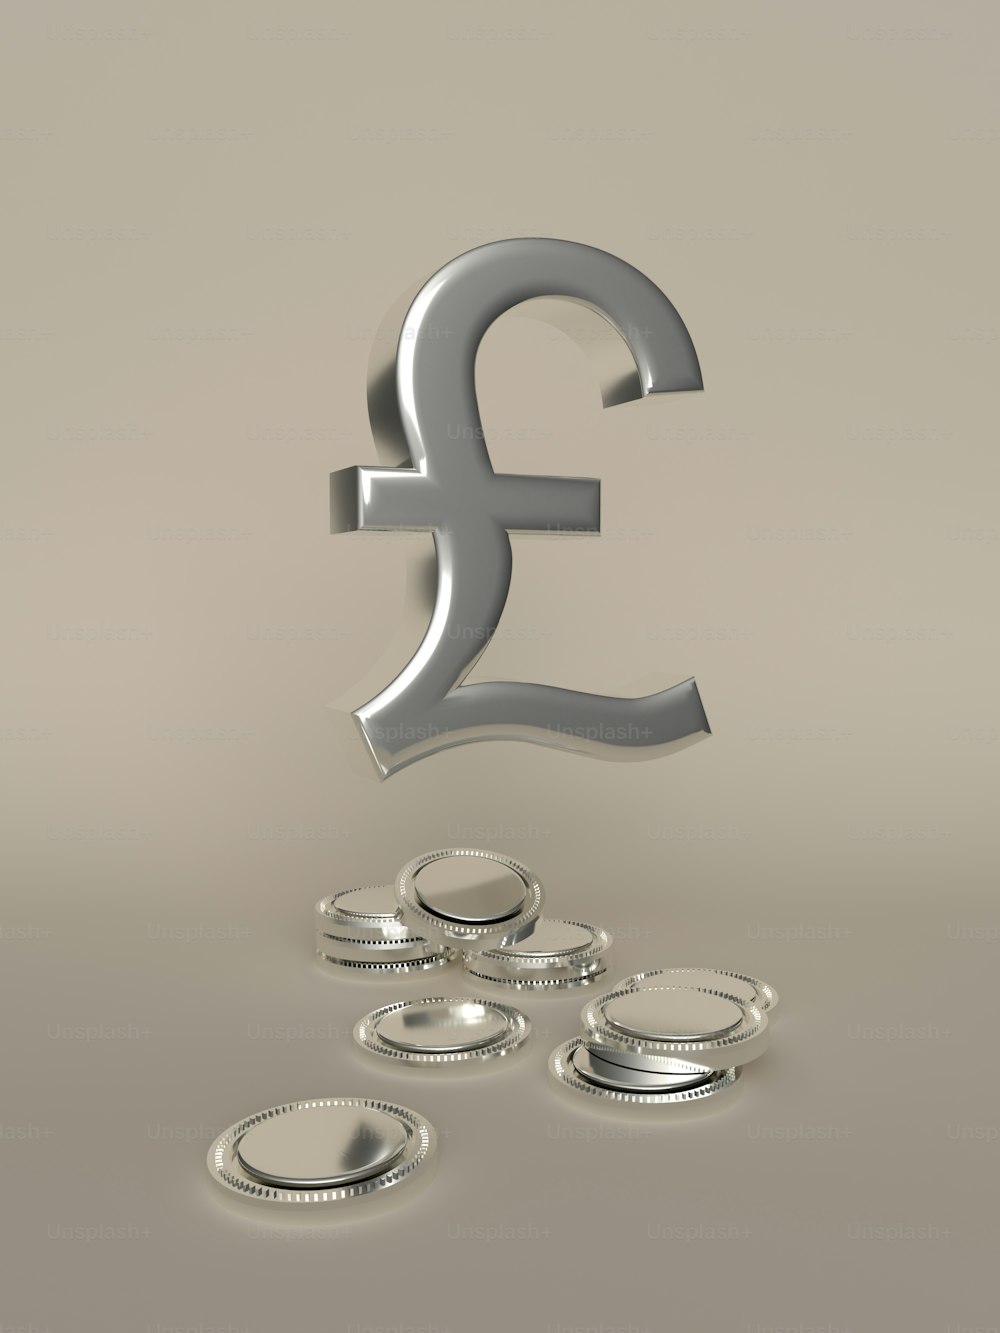 ein silbernes Pfundzeichen, umgeben von Münzen